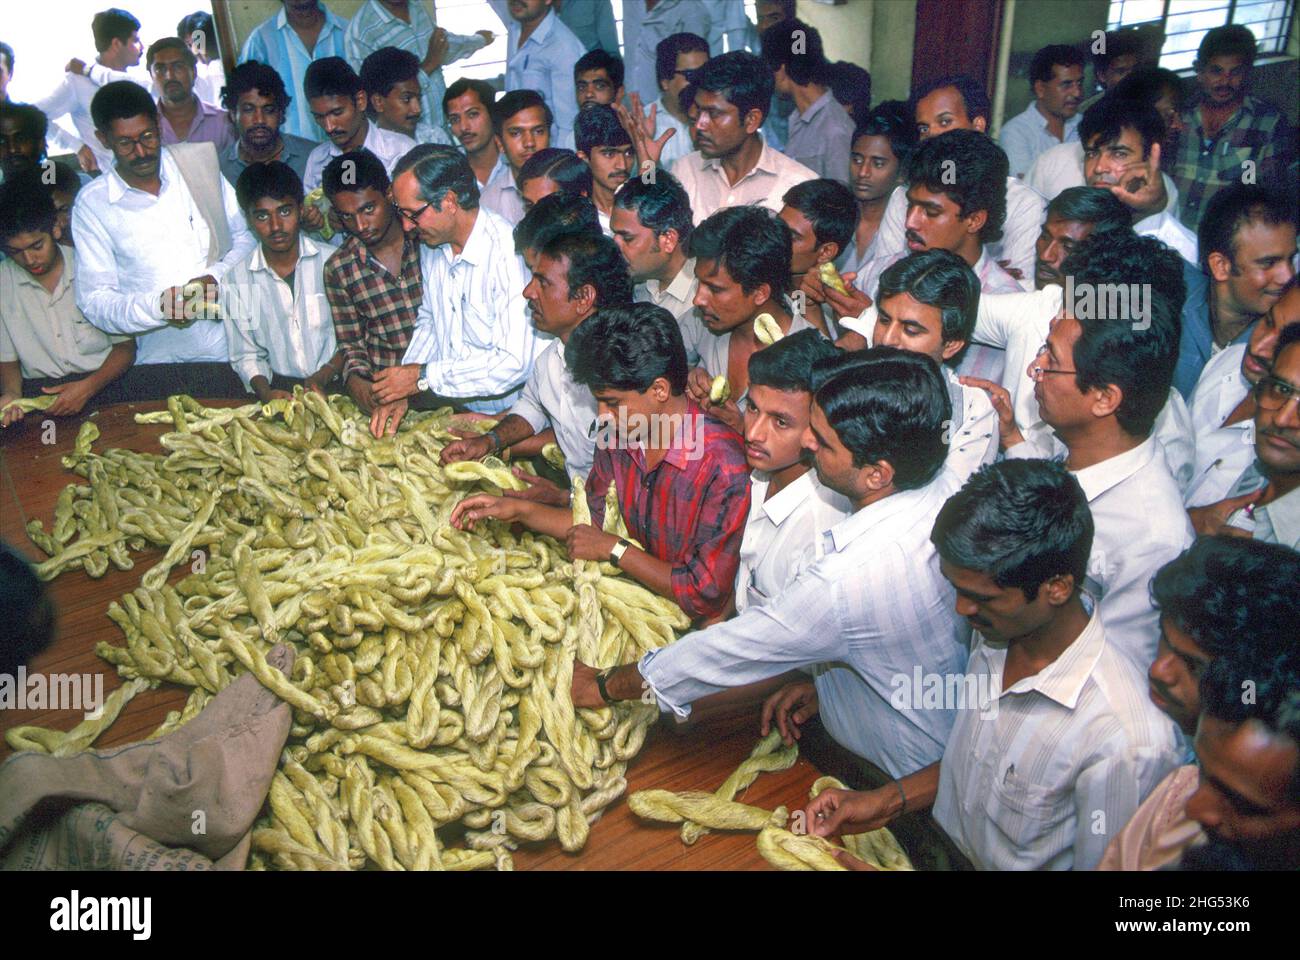 Les hommes d'affaires inspectent et marchandes sur des pelées de soie brute, ou cordes de soie, sur un marché de Bangalore.Karnataka, Inde Banque D'Images